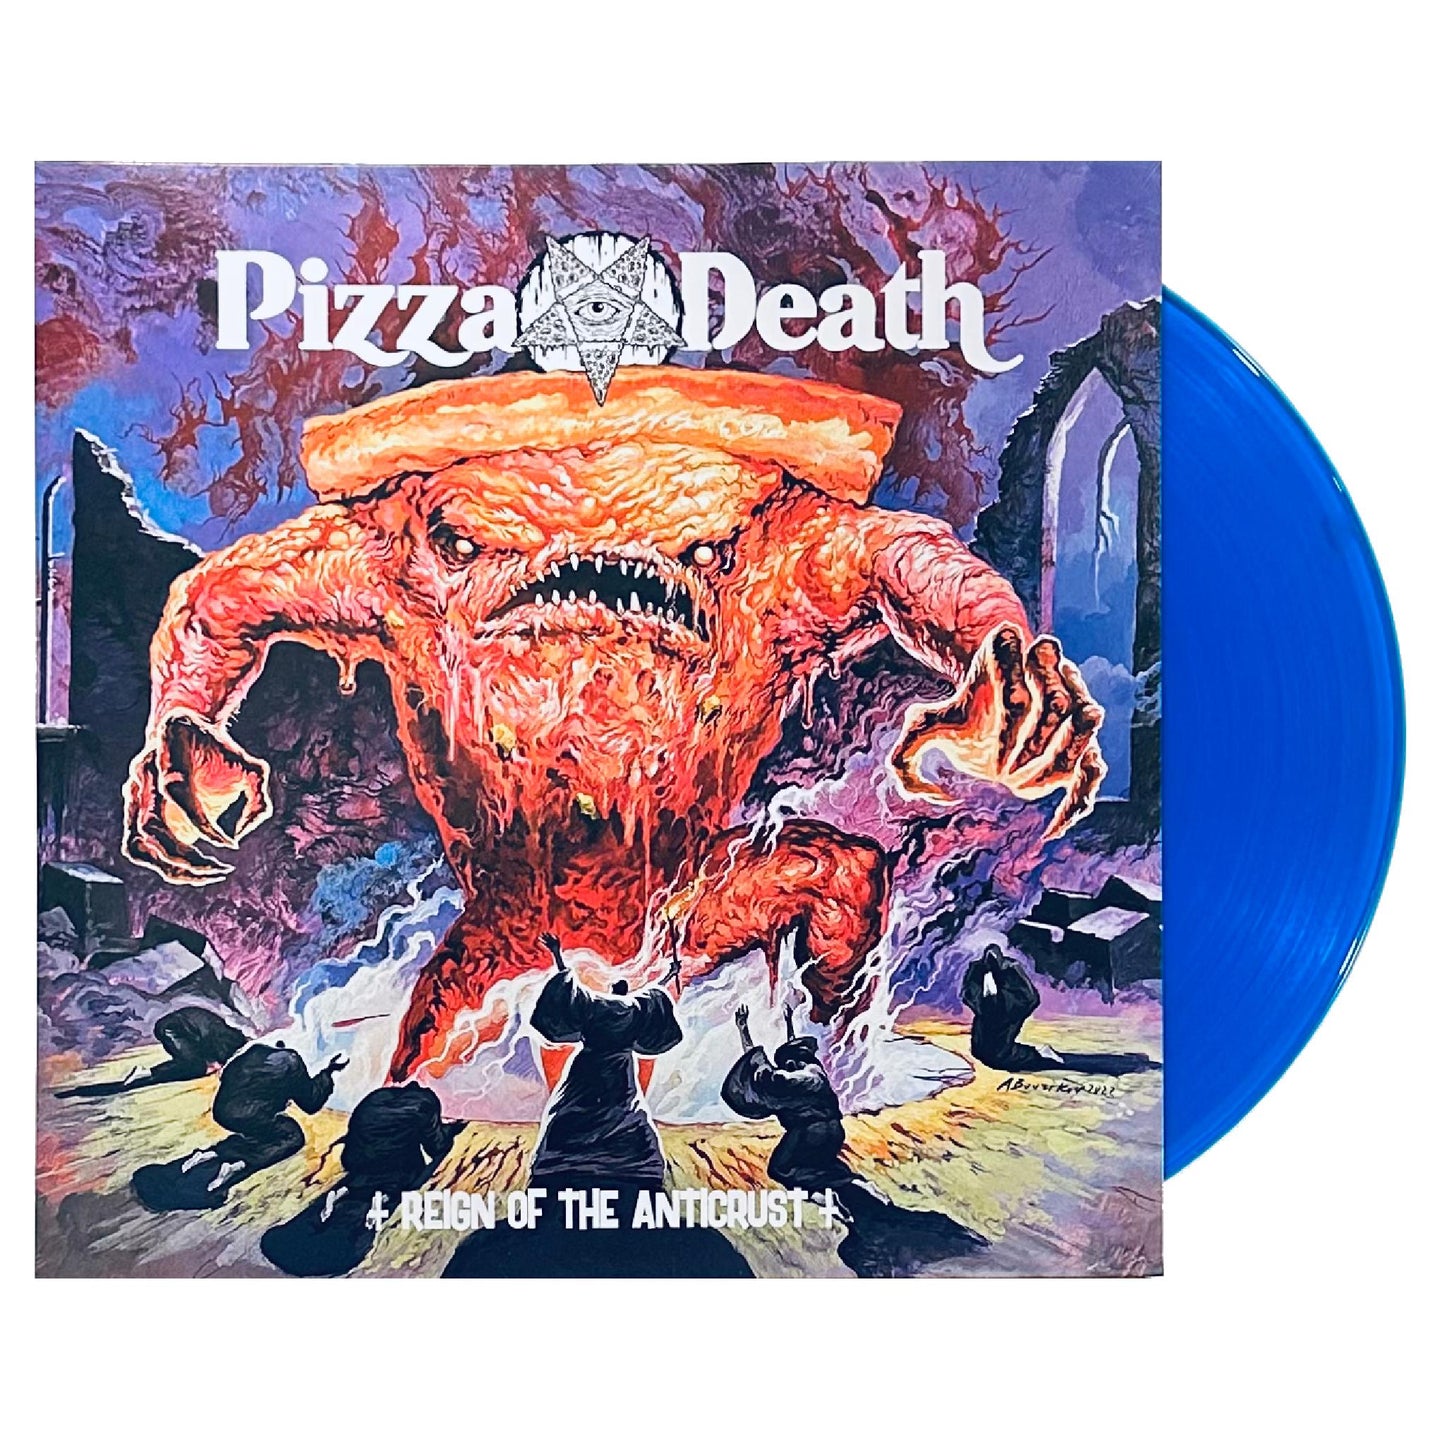 Pizza Death - Reign of the Anti-crust LP (color vinyl)